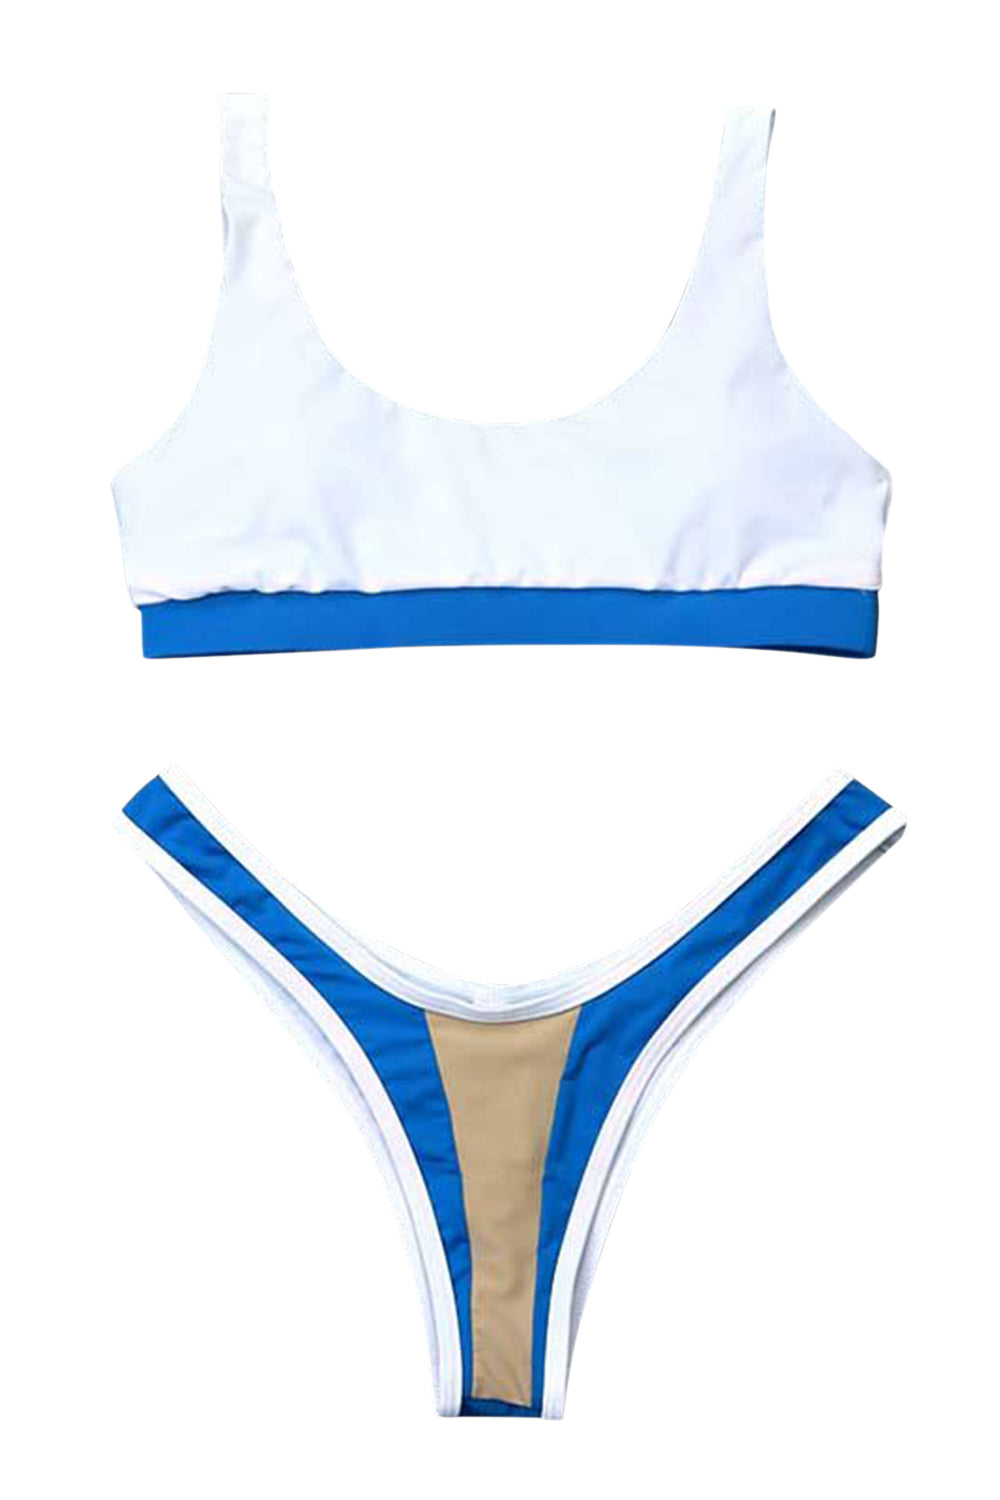 Iyasson Womens U-Shaped Low Rise Two Pieces Bikini Set Padded Stitching Swimsuit